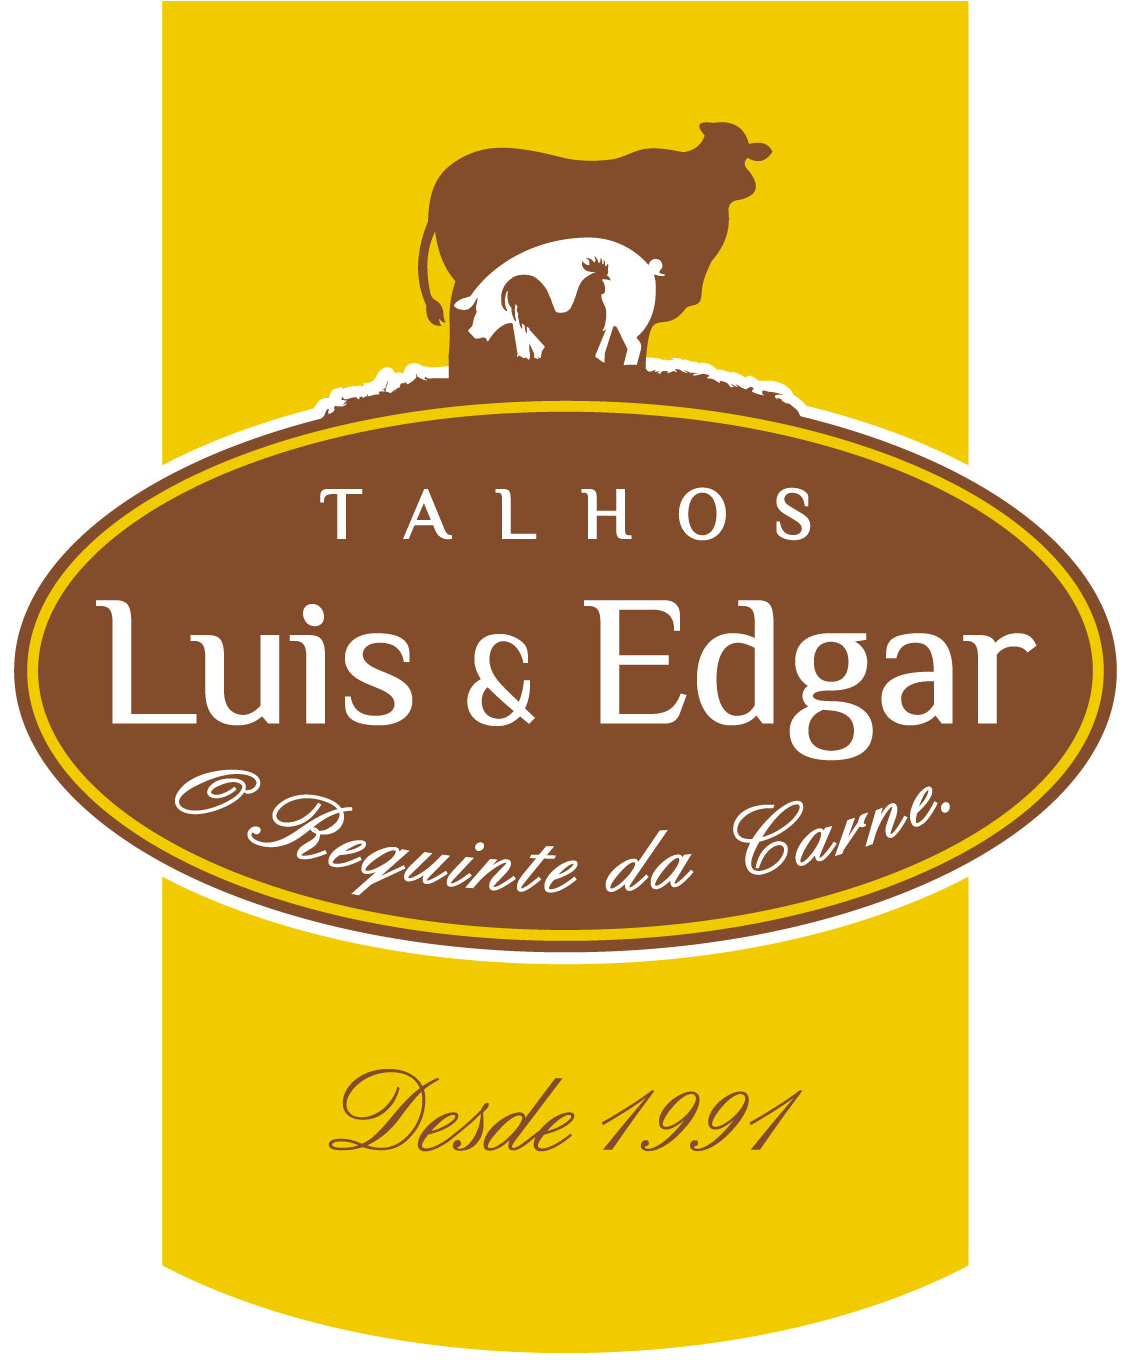 Logotipo Talhos Luis e Edgar | Clique aqui para voltar à página inicial.